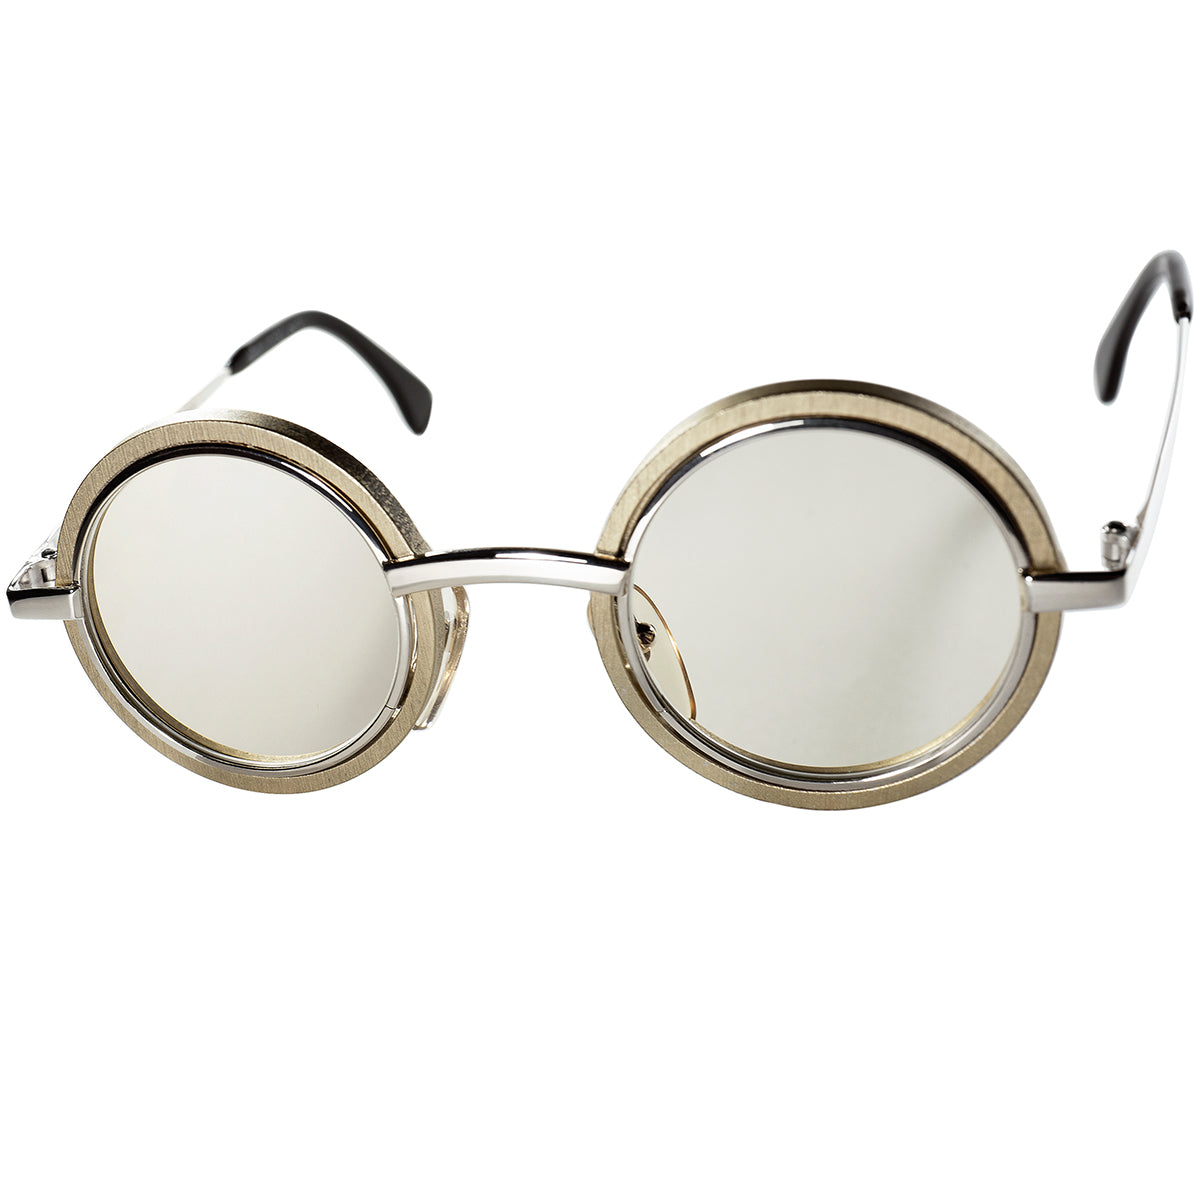 初期作品でもTOPレベルの完成度の実用的でCRAZYな 丸眼鏡 1980-90s初期